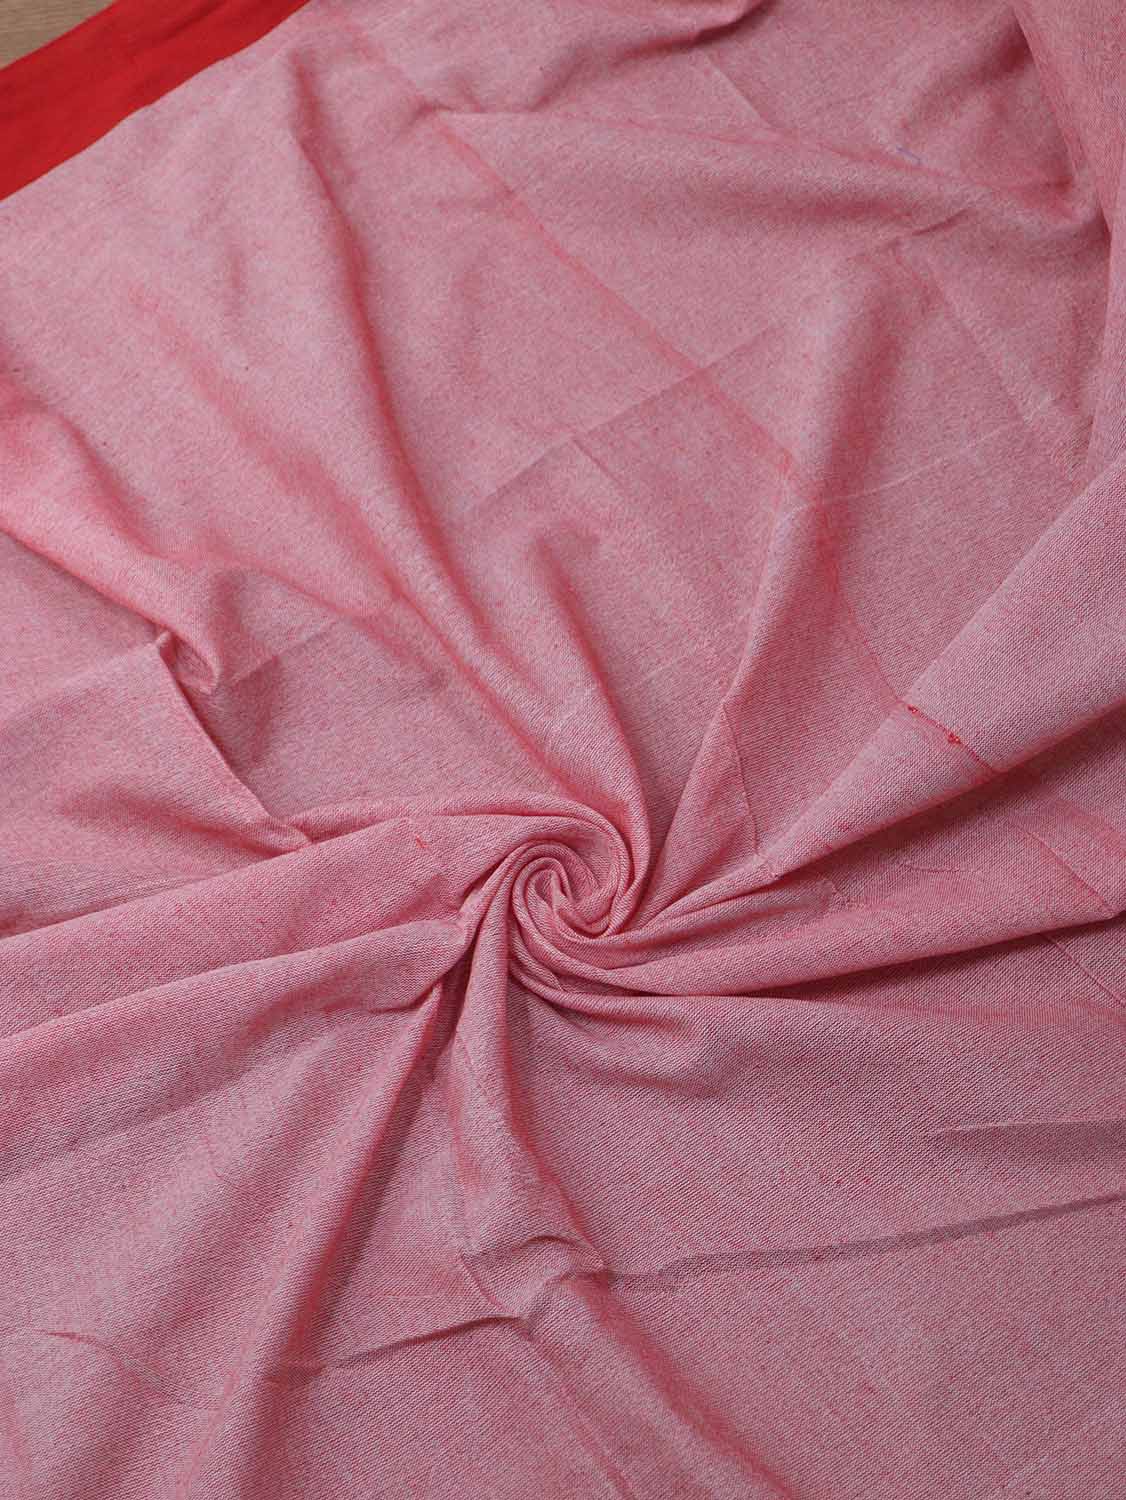 Pink Bengal Plain Cotton Saree - Elegant and Comfortable - divyaindia 